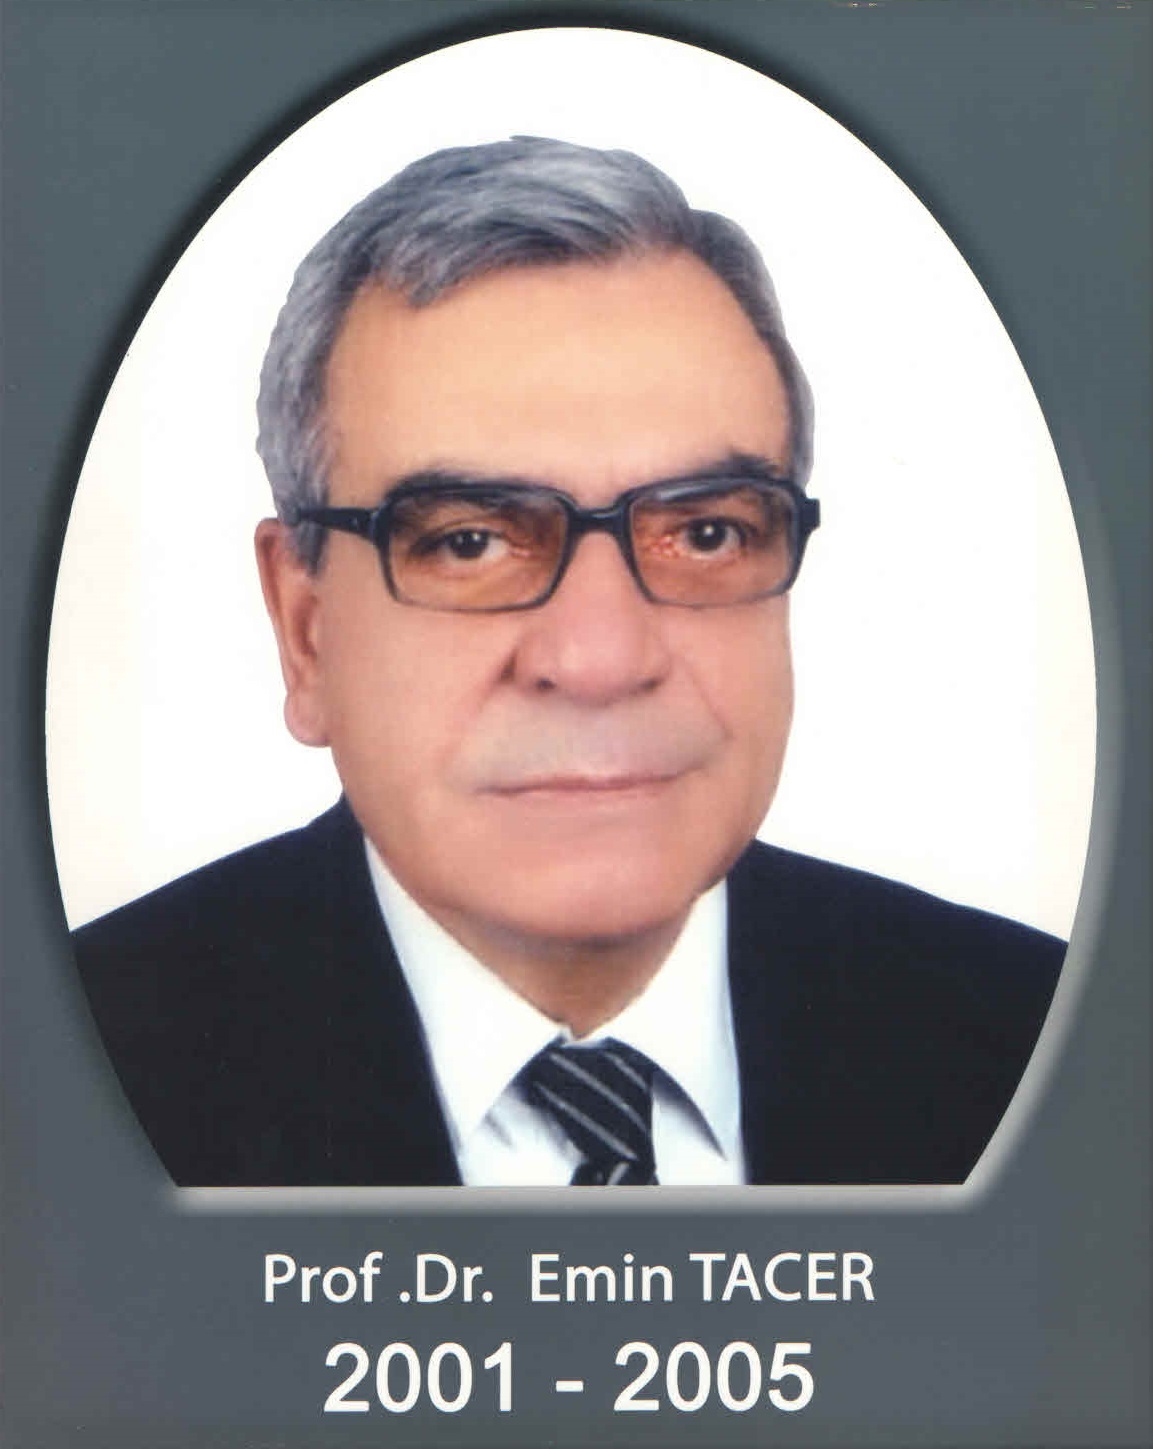 Prof. Dr. Emin tacer